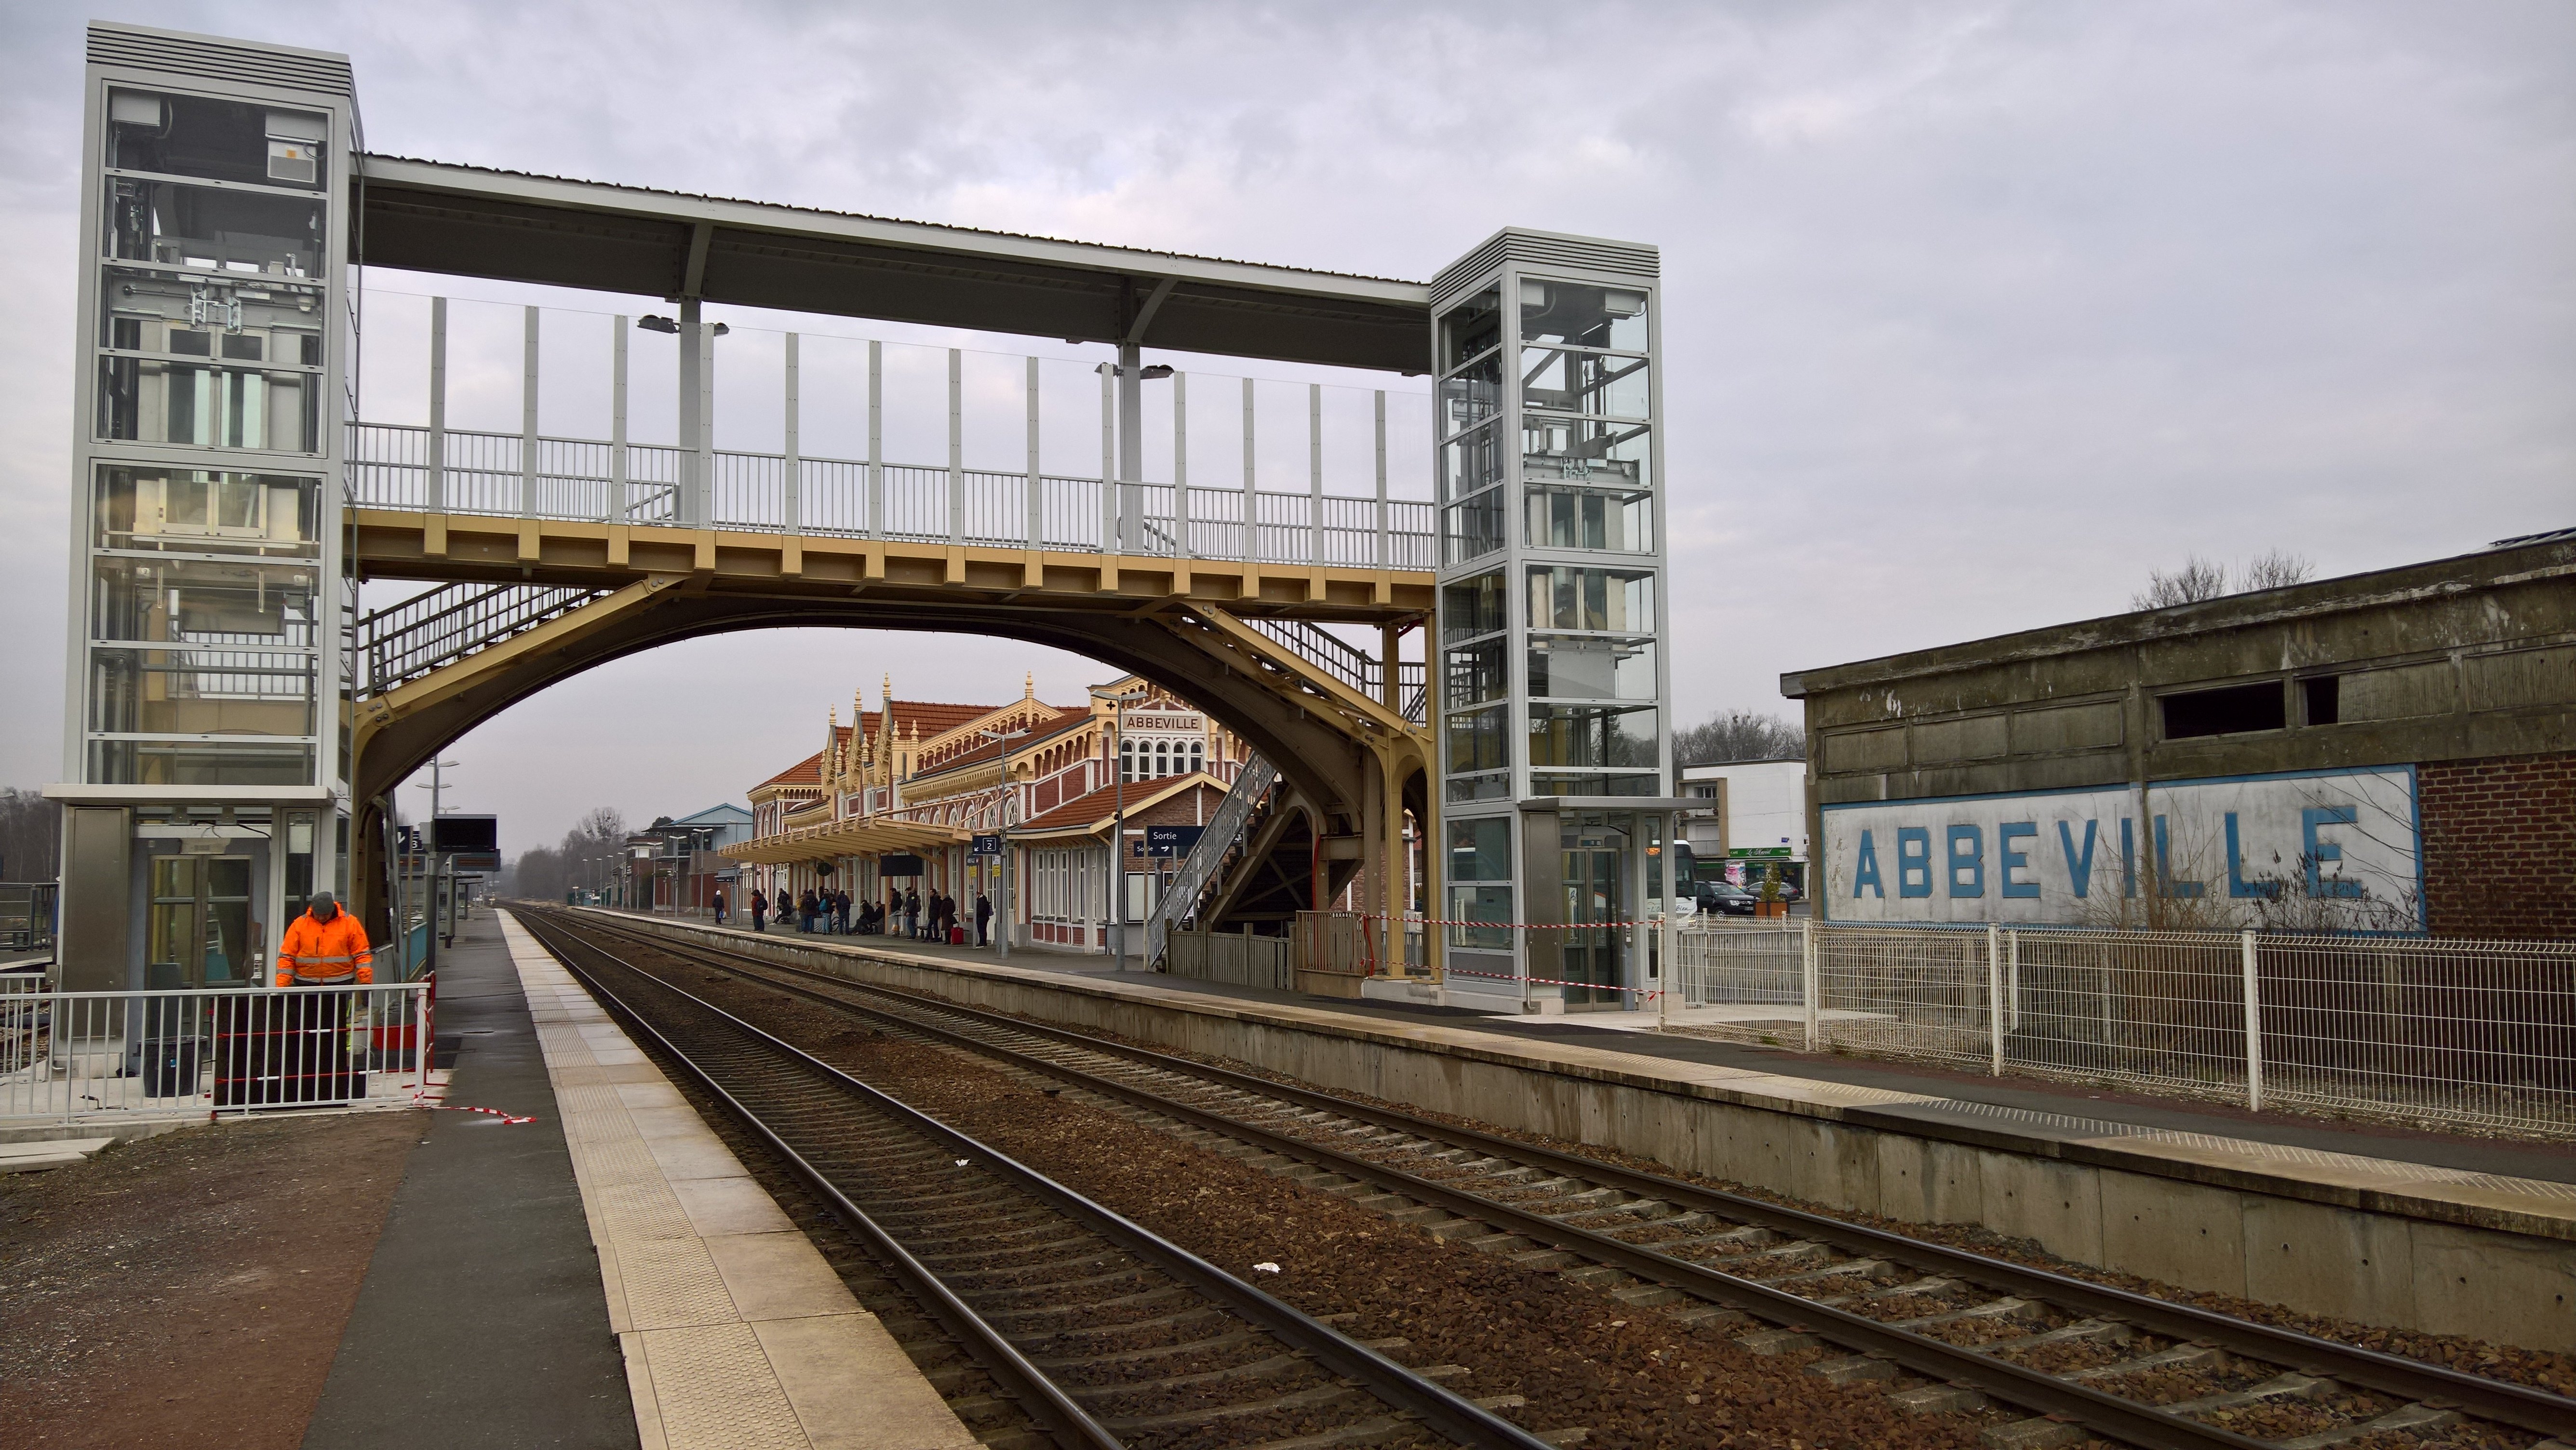 Gare Abbeville